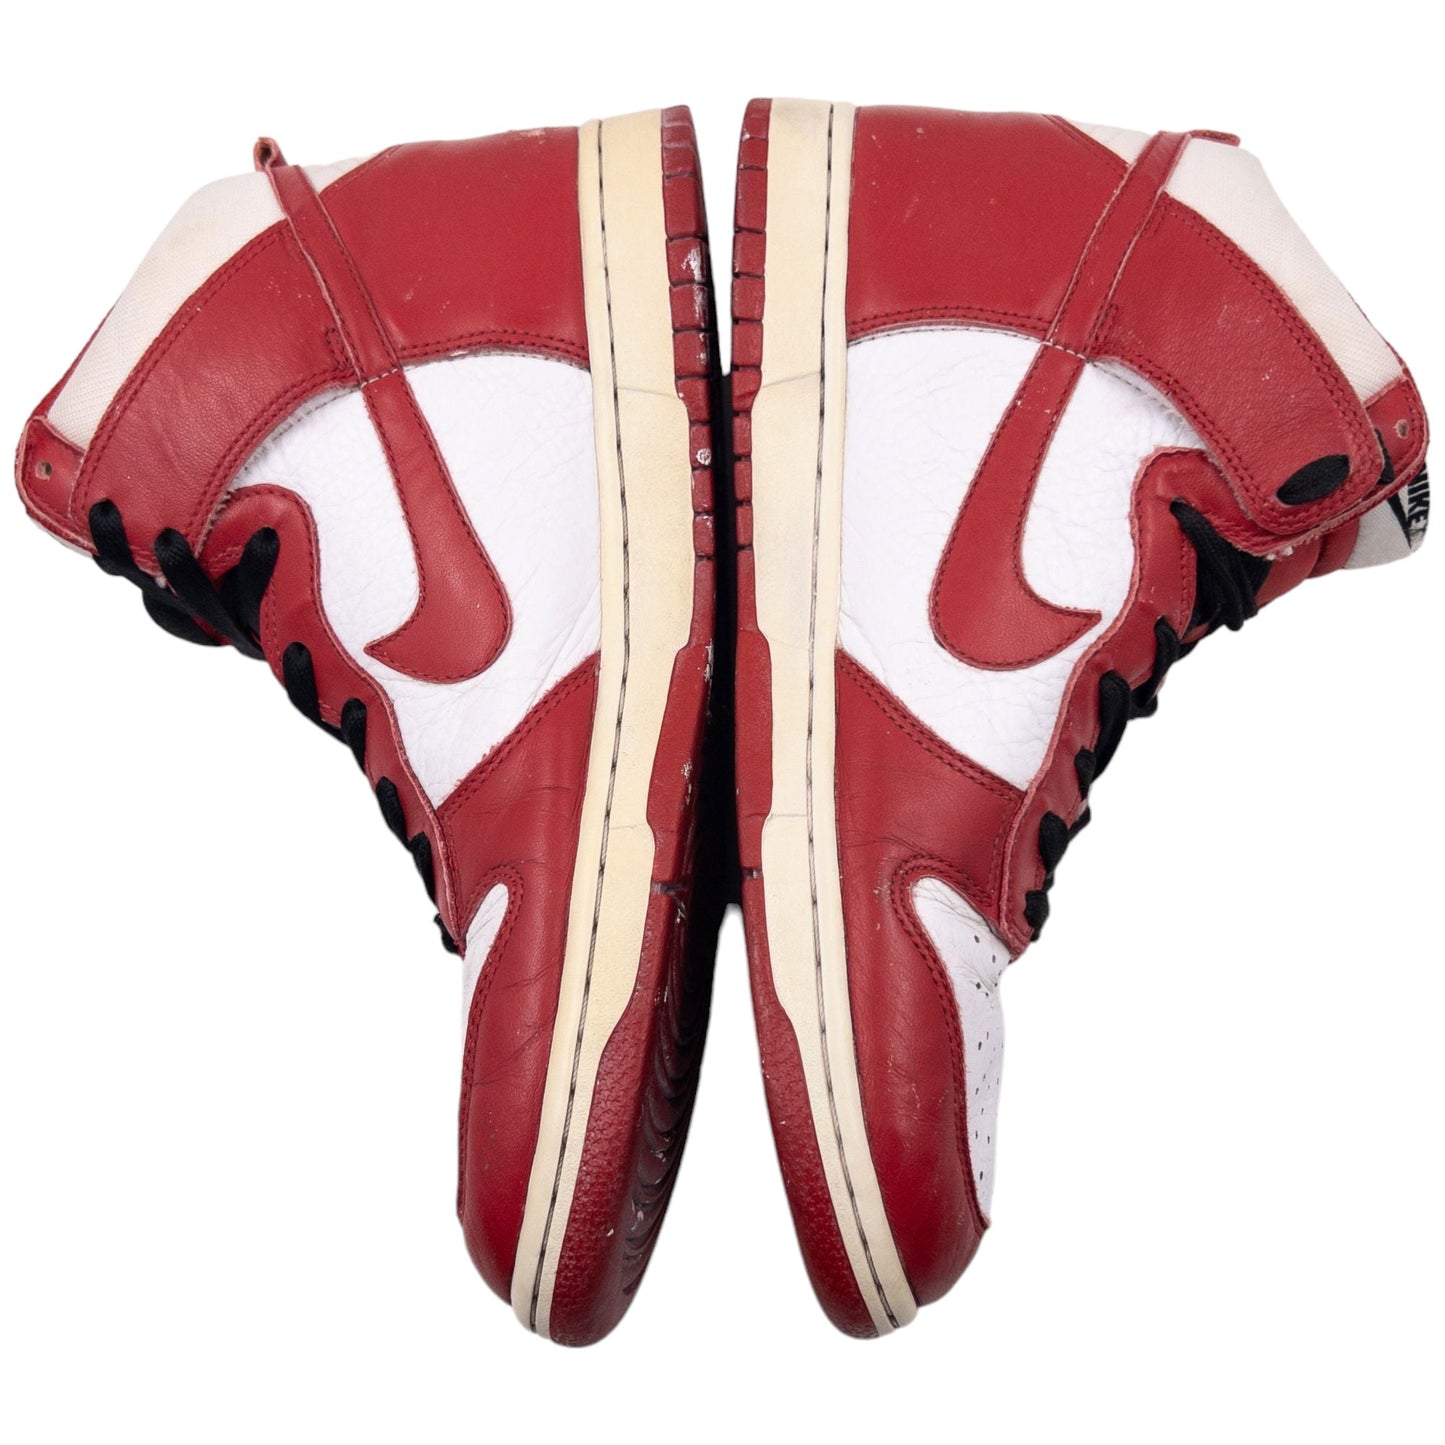 Vintage Nike AIR Jordan 1 High Size UK 9